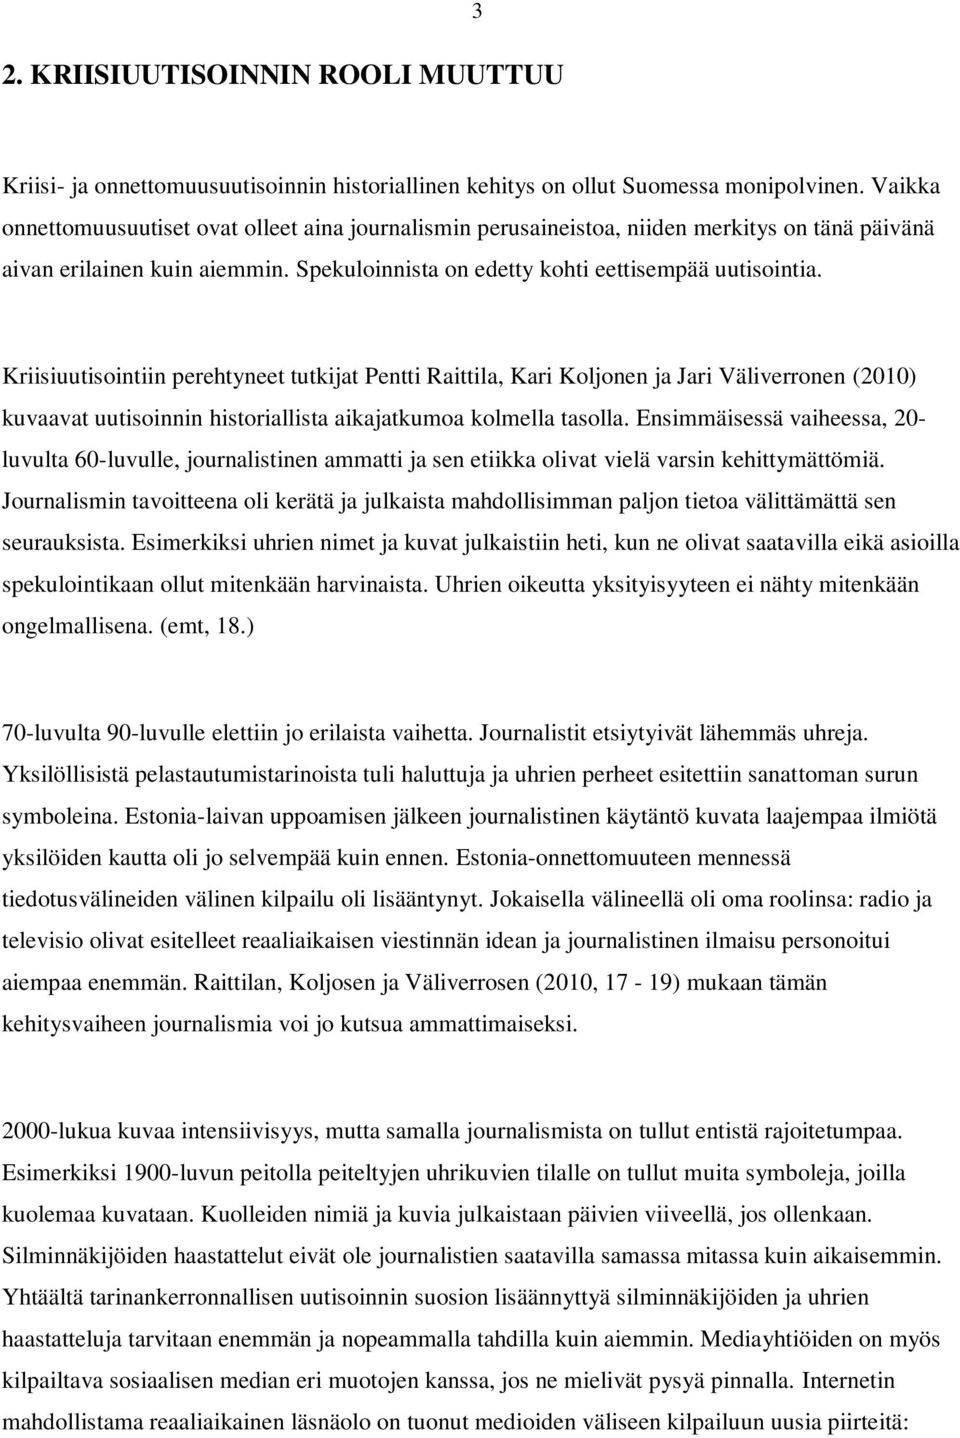 Kriisiuutisointiin perehtyneet tutkijat Pentti Raittila, Kari Koljonen ja Jari Väliverronen (2010) kuvaavat uutisoinnin historiallista aikajatkumoa kolmella tasolla.